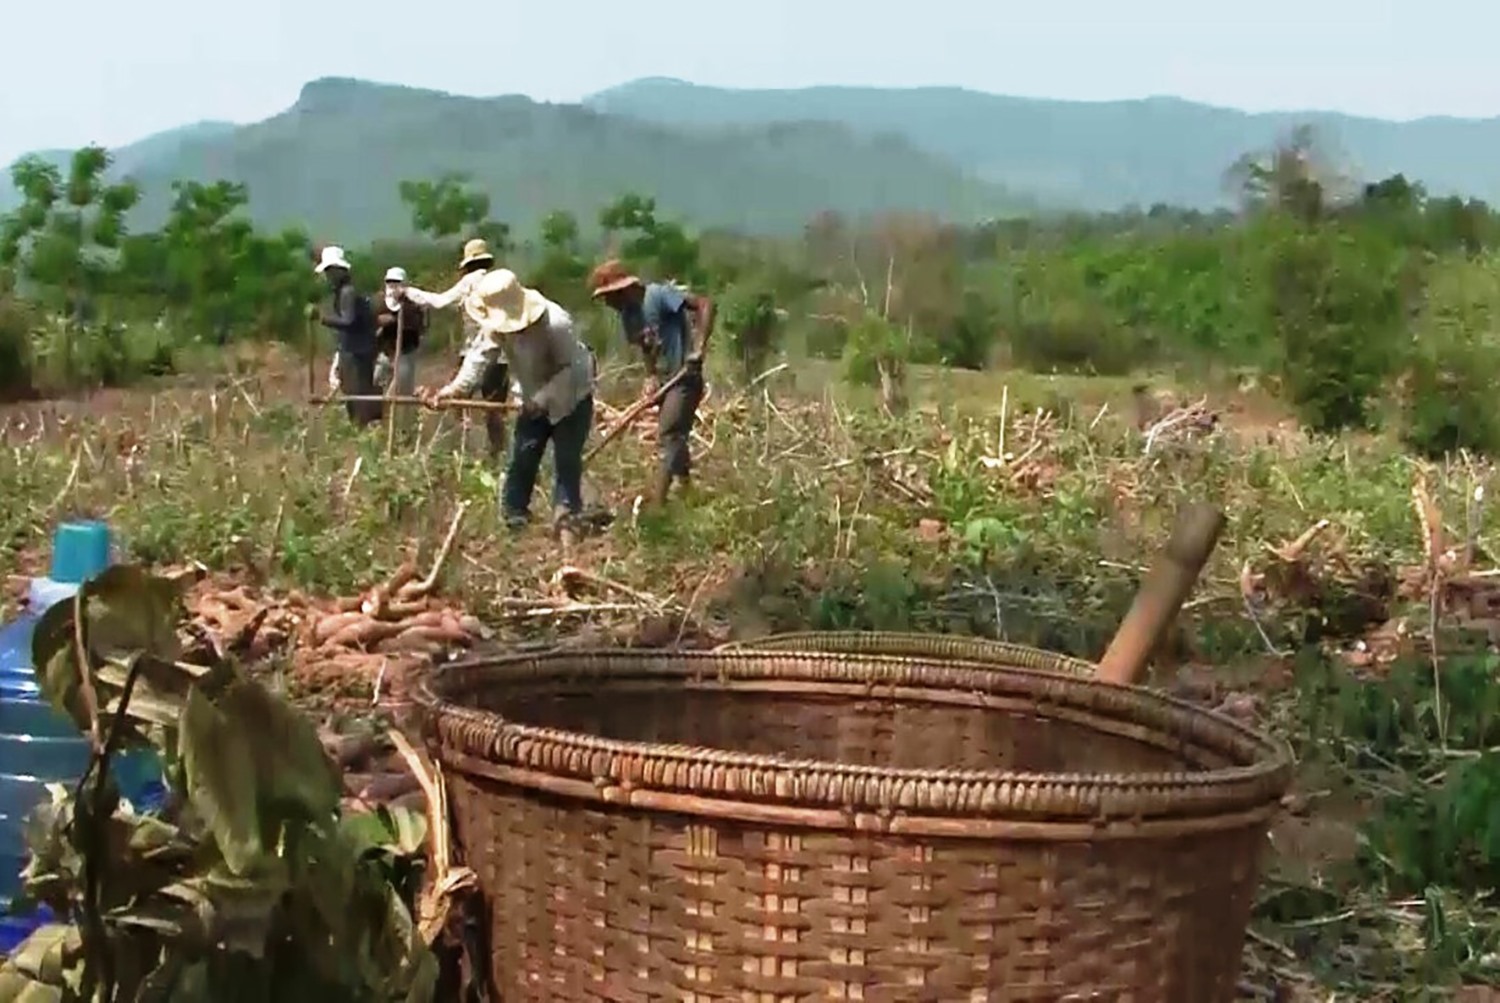 Tranh thủ thời tiết tạnh ráo, nông dân huyện Hướng Hóa tập trung thu hoạch sắn - Ảnh: L.T